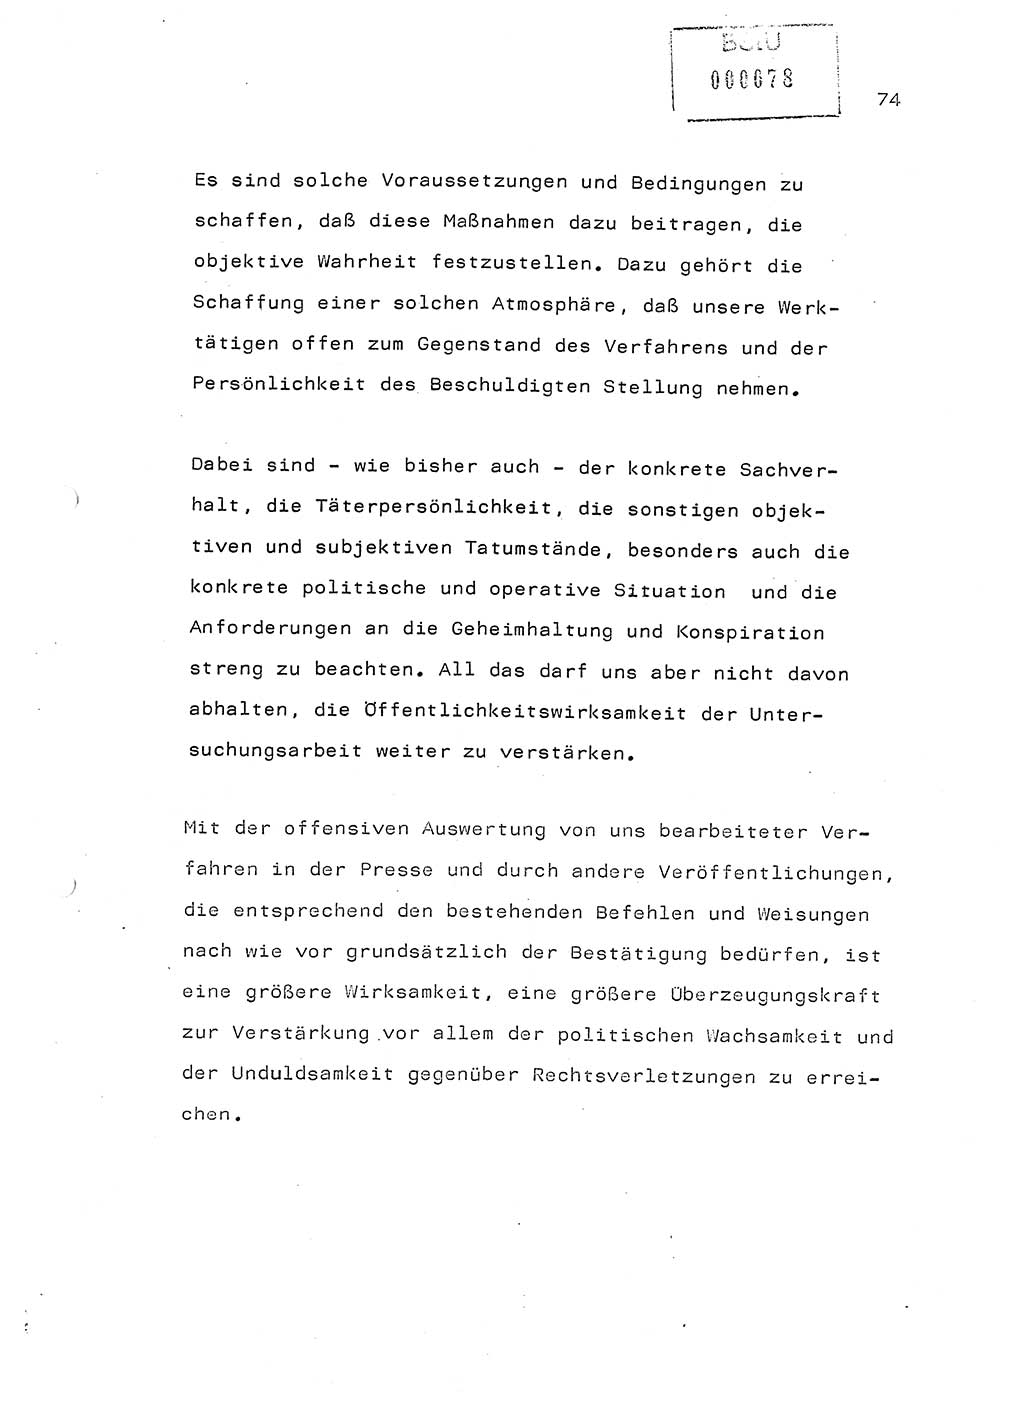 Referat (Generaloberst Erich Mielke) auf der Zentralen Dienstkonferenz am 24.5.1979 [Ministerium für Staatssicherheit (MfS), Deutsche Demokratische Republik (DDR), Der Minister], Berlin 1979, Seite 74 (Ref. DK DDR MfS Min. /79 1979, S. 74)